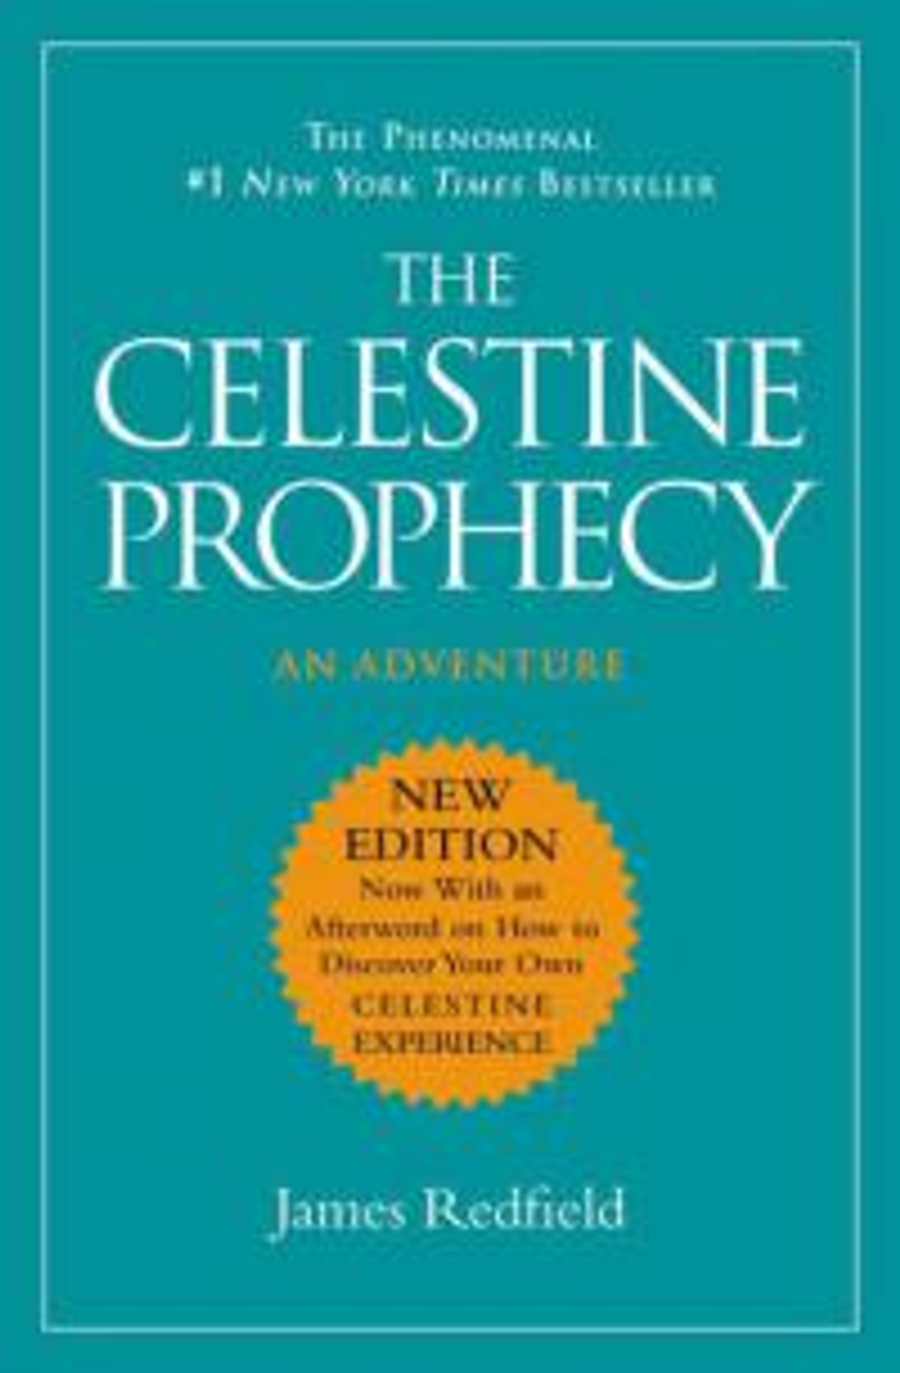 Celestine Prophecy by James Redfield